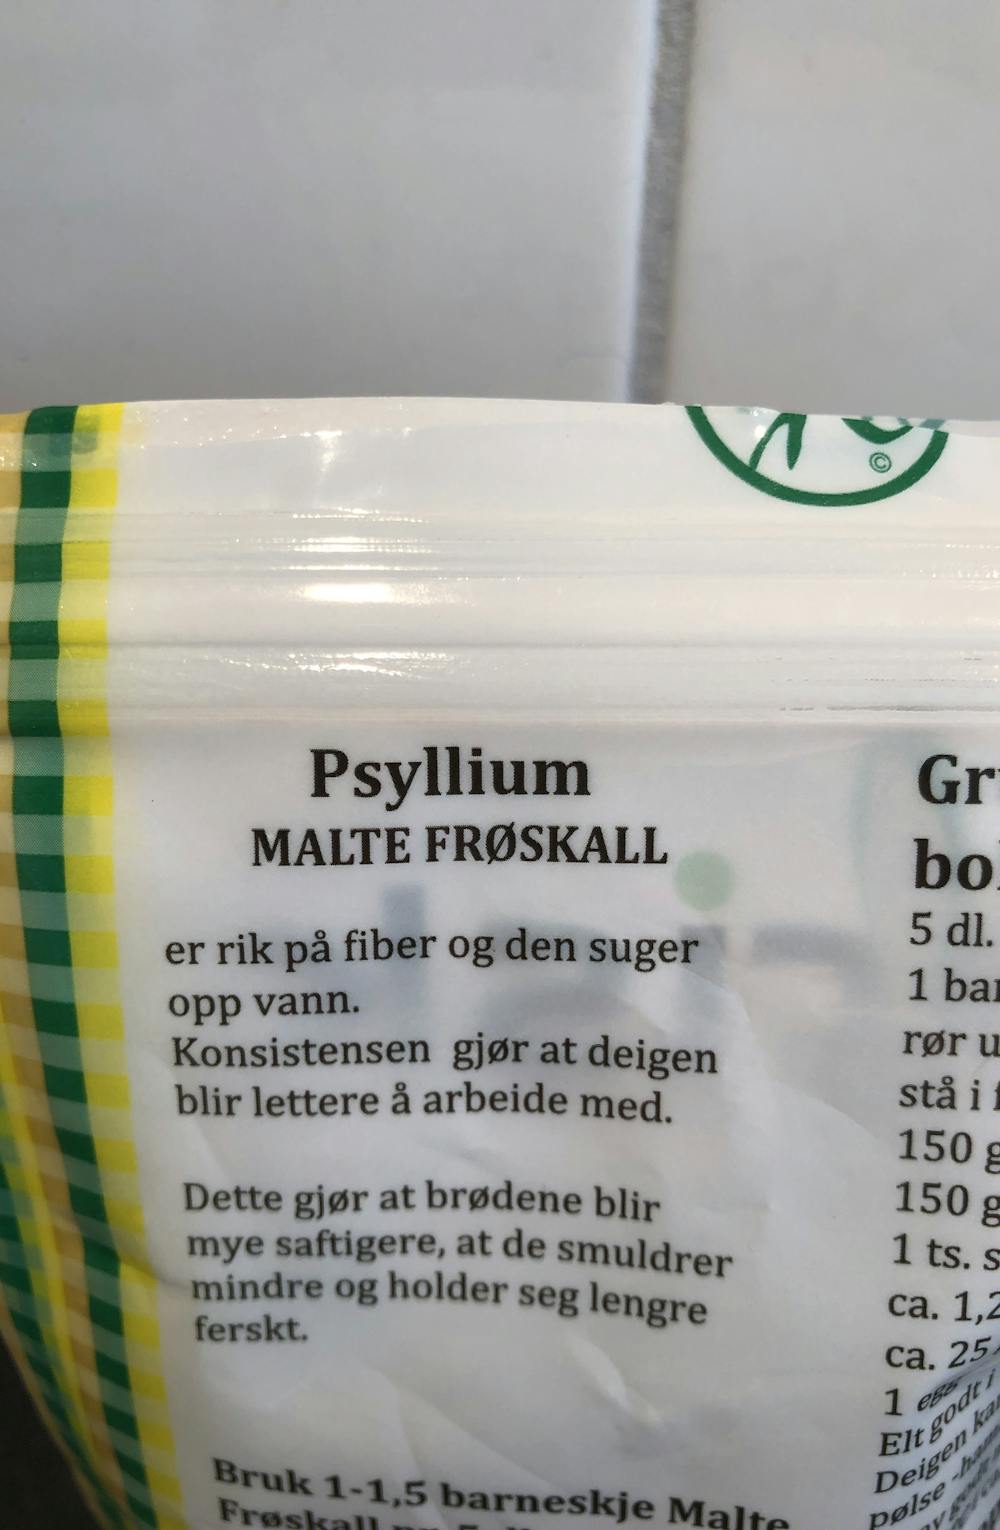 Ingredienslisten til Brisk Psyllium malte frøskall